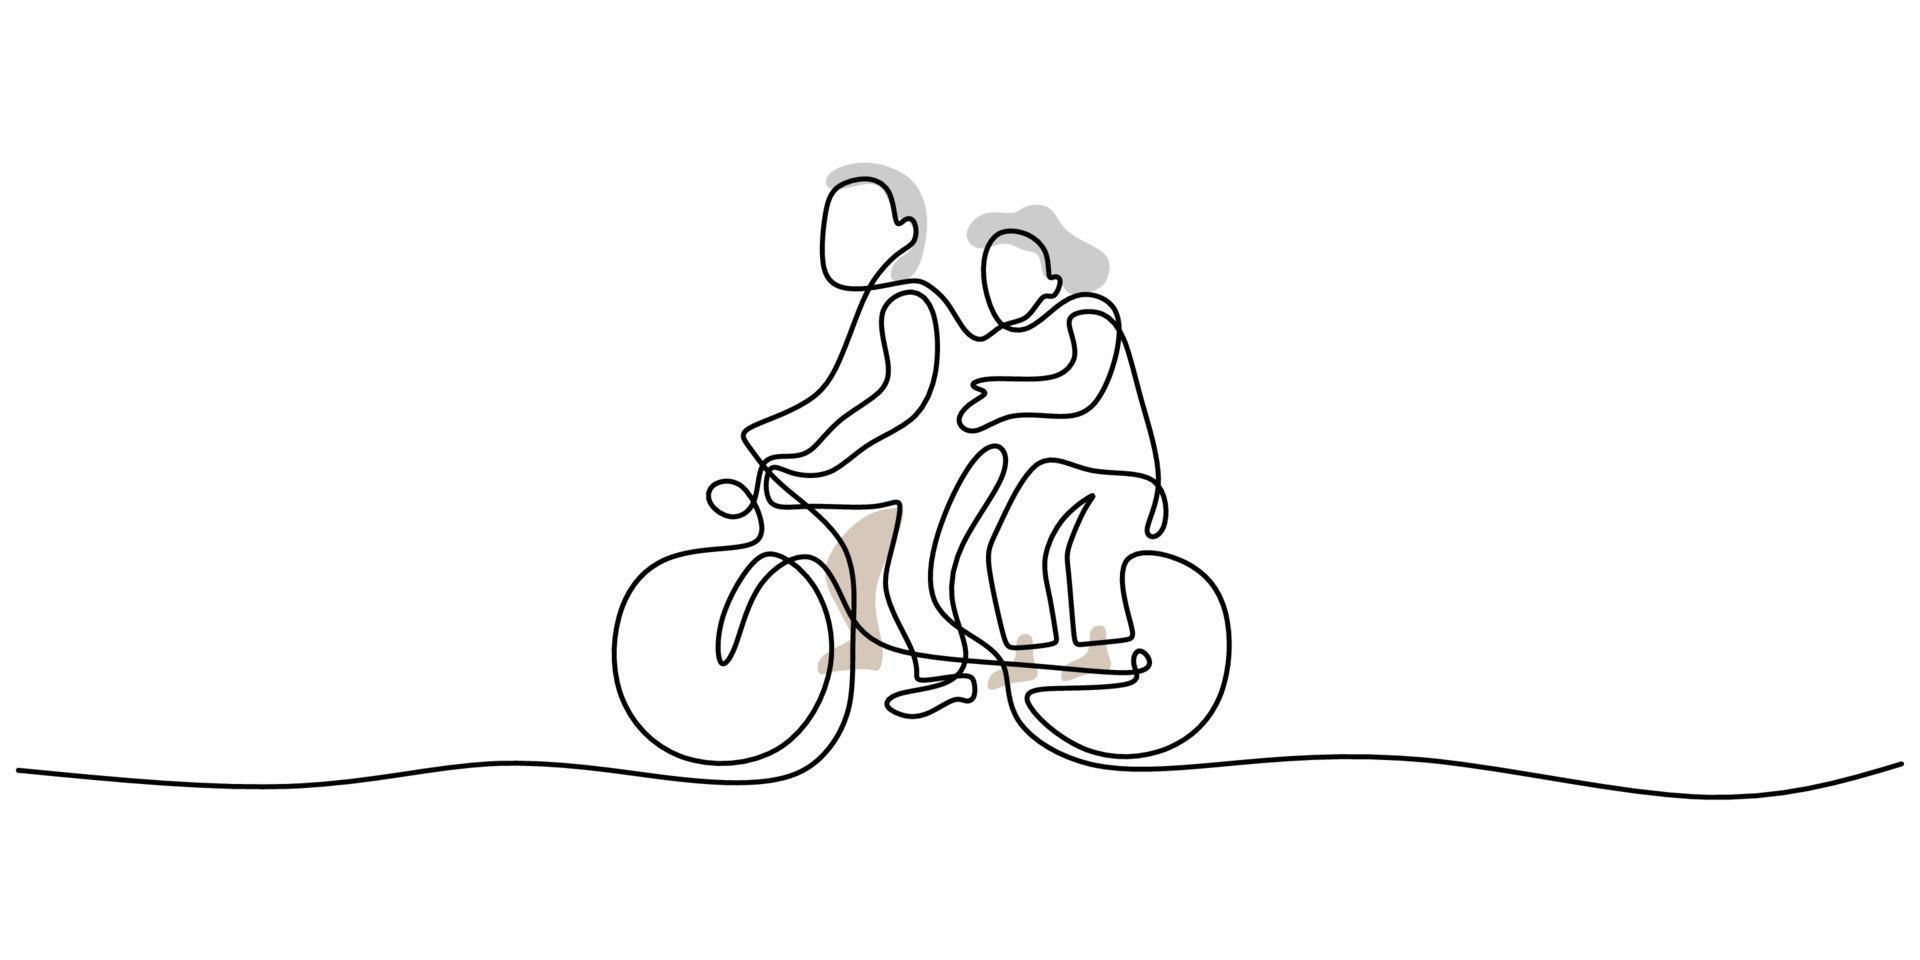 una sola línea continua de pareja madura montando bicicleta vector